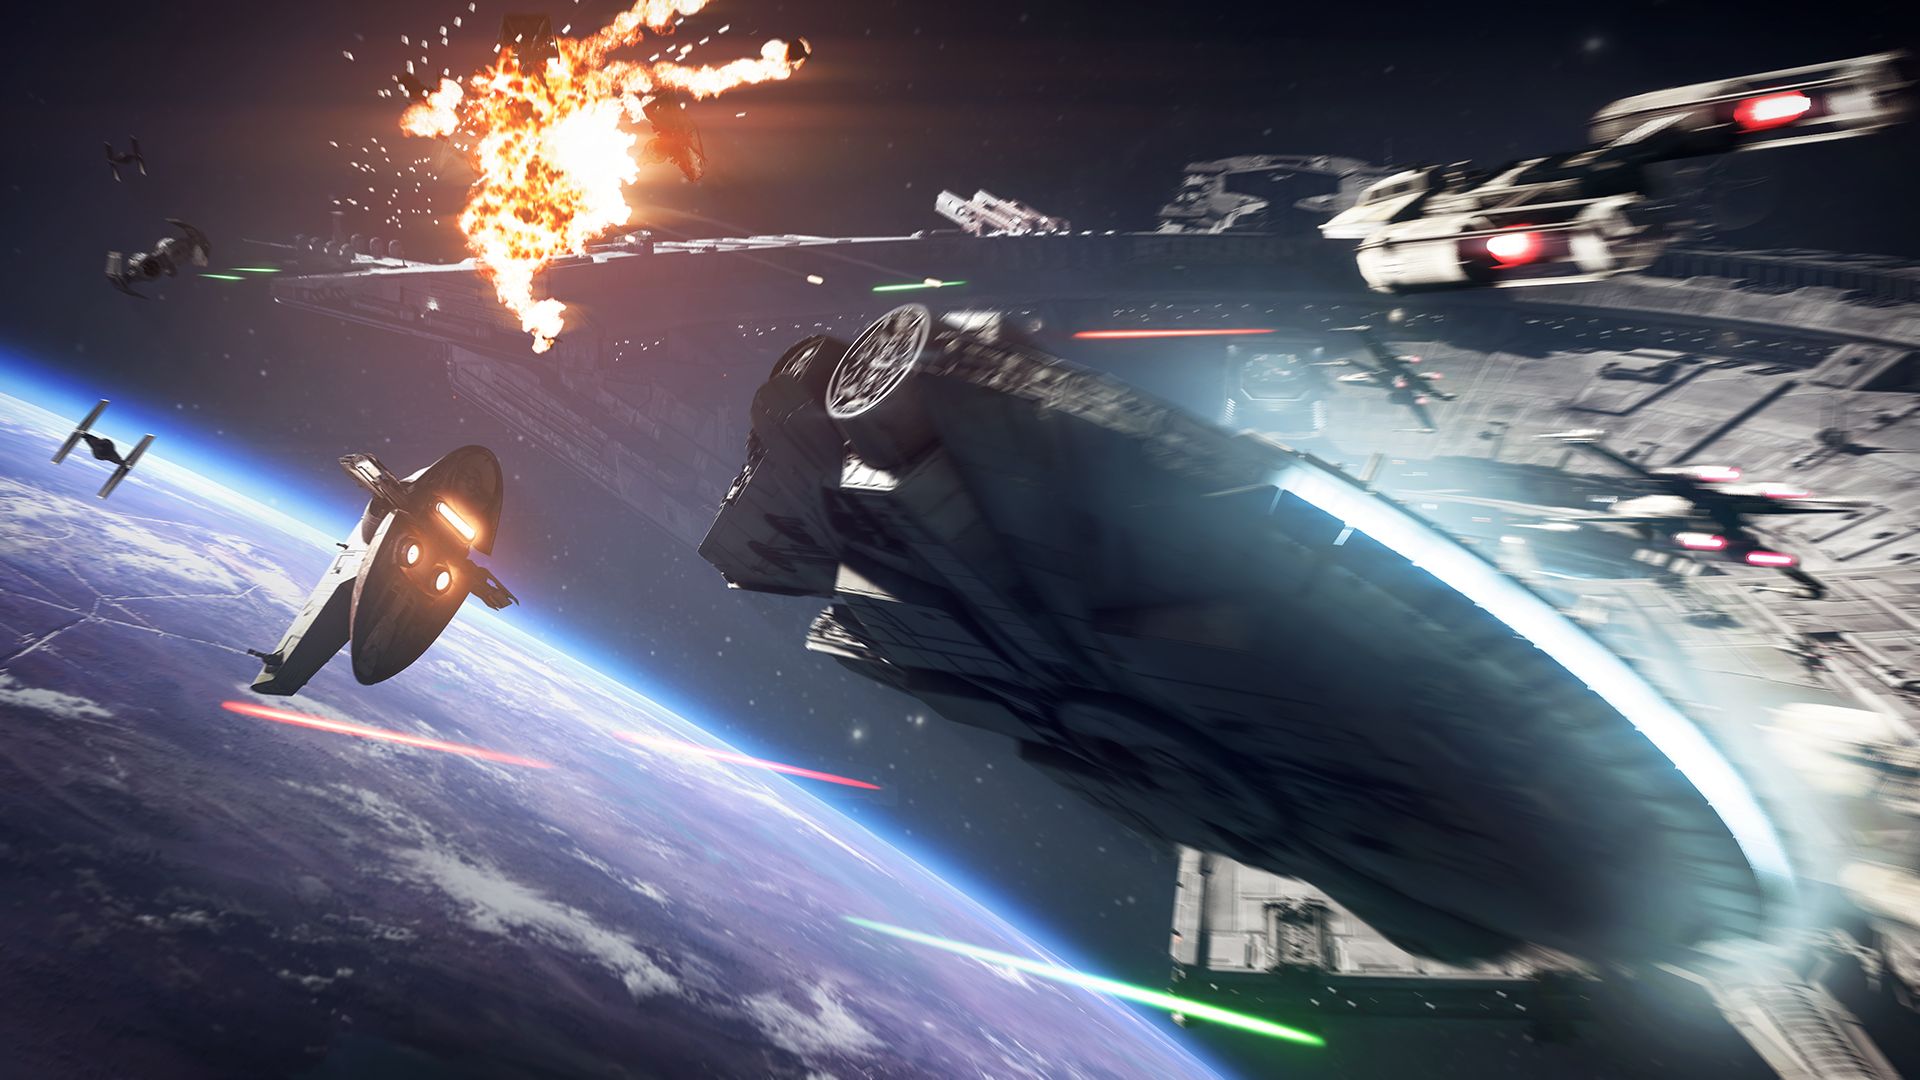 Скриншот Star Wars Battlefront 2 [ORIGIN] + подарок